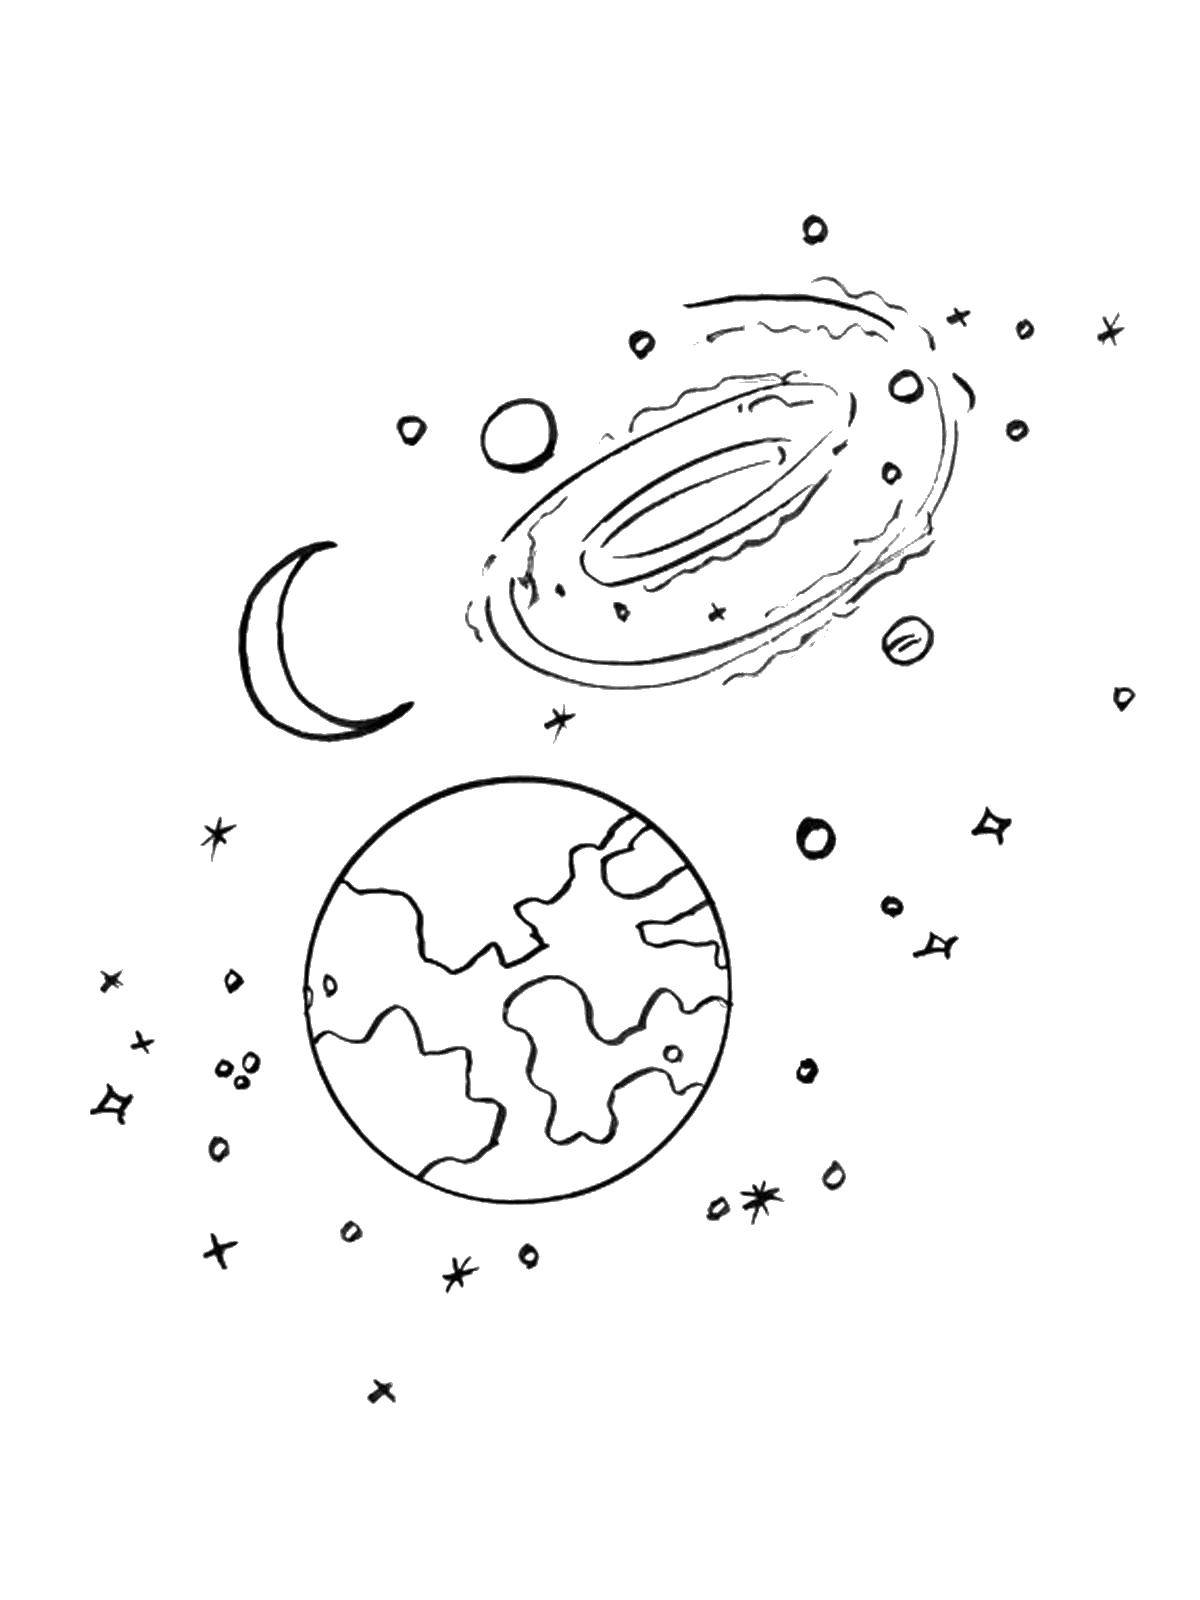 Опис: розмальовки  Наша планета земля і місяць під вселеннной. Категорія: космос. Теги:  Космок, планета, Всесвіт, Галактика, півмісяць, Місяць, зірки.